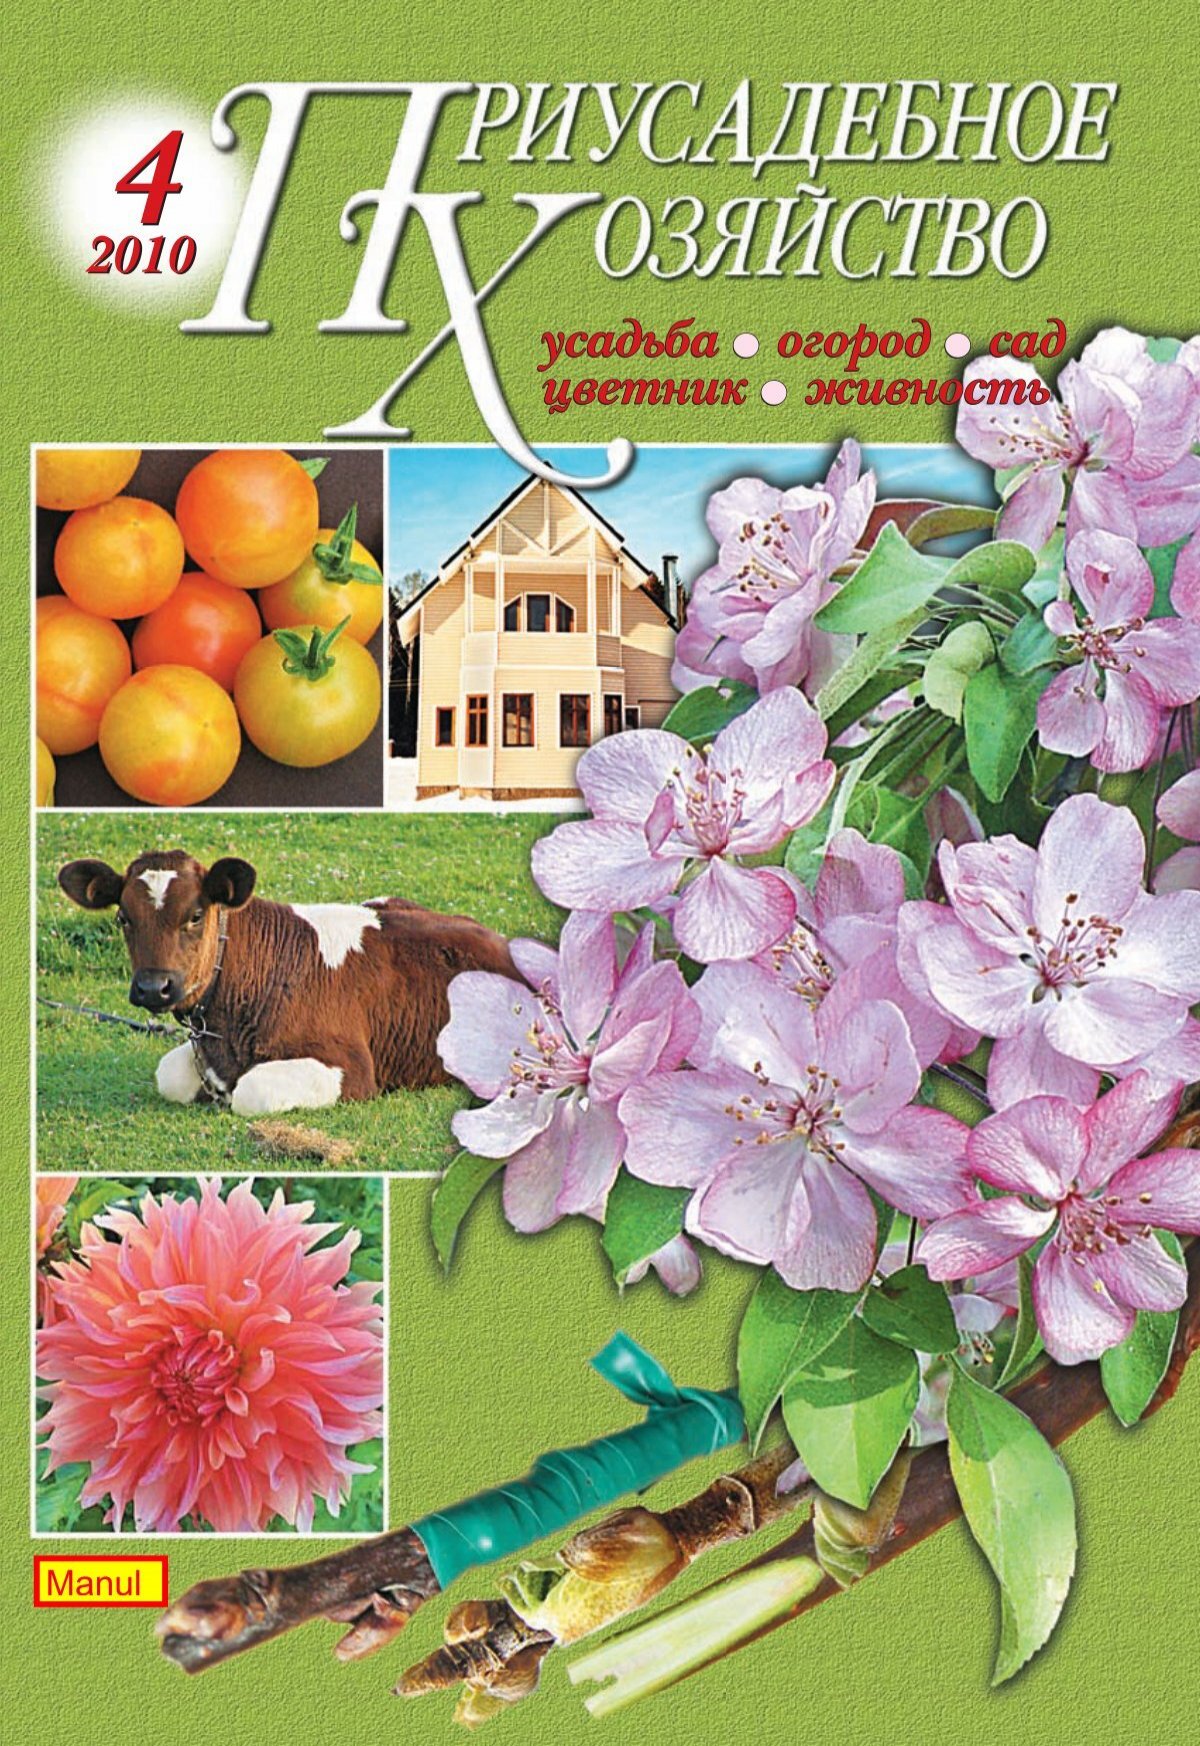 Книги и журналы для садоводов и огородников скачать бесплатно